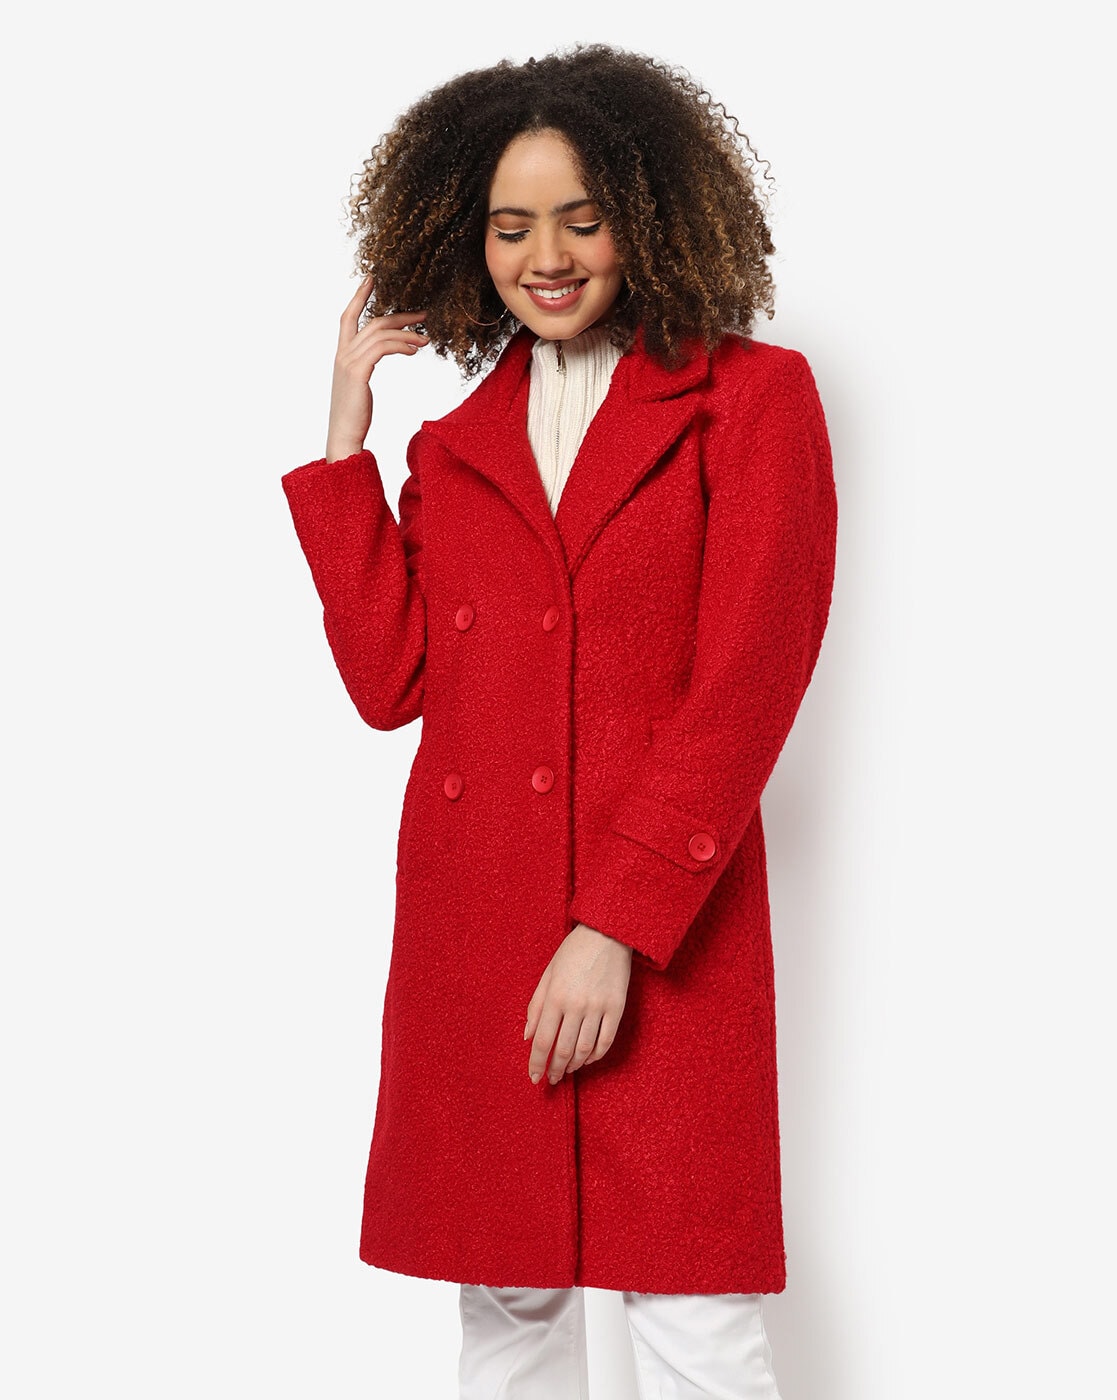 Retro Hooded Wool Coat, Maxi Red Coat, Wool Coat, Vintage Coat, Winter Coat,  Fit and Flare Coat Linennaive - Etsy | Hooded wool coat, Fit and flare coat,  Wool coat